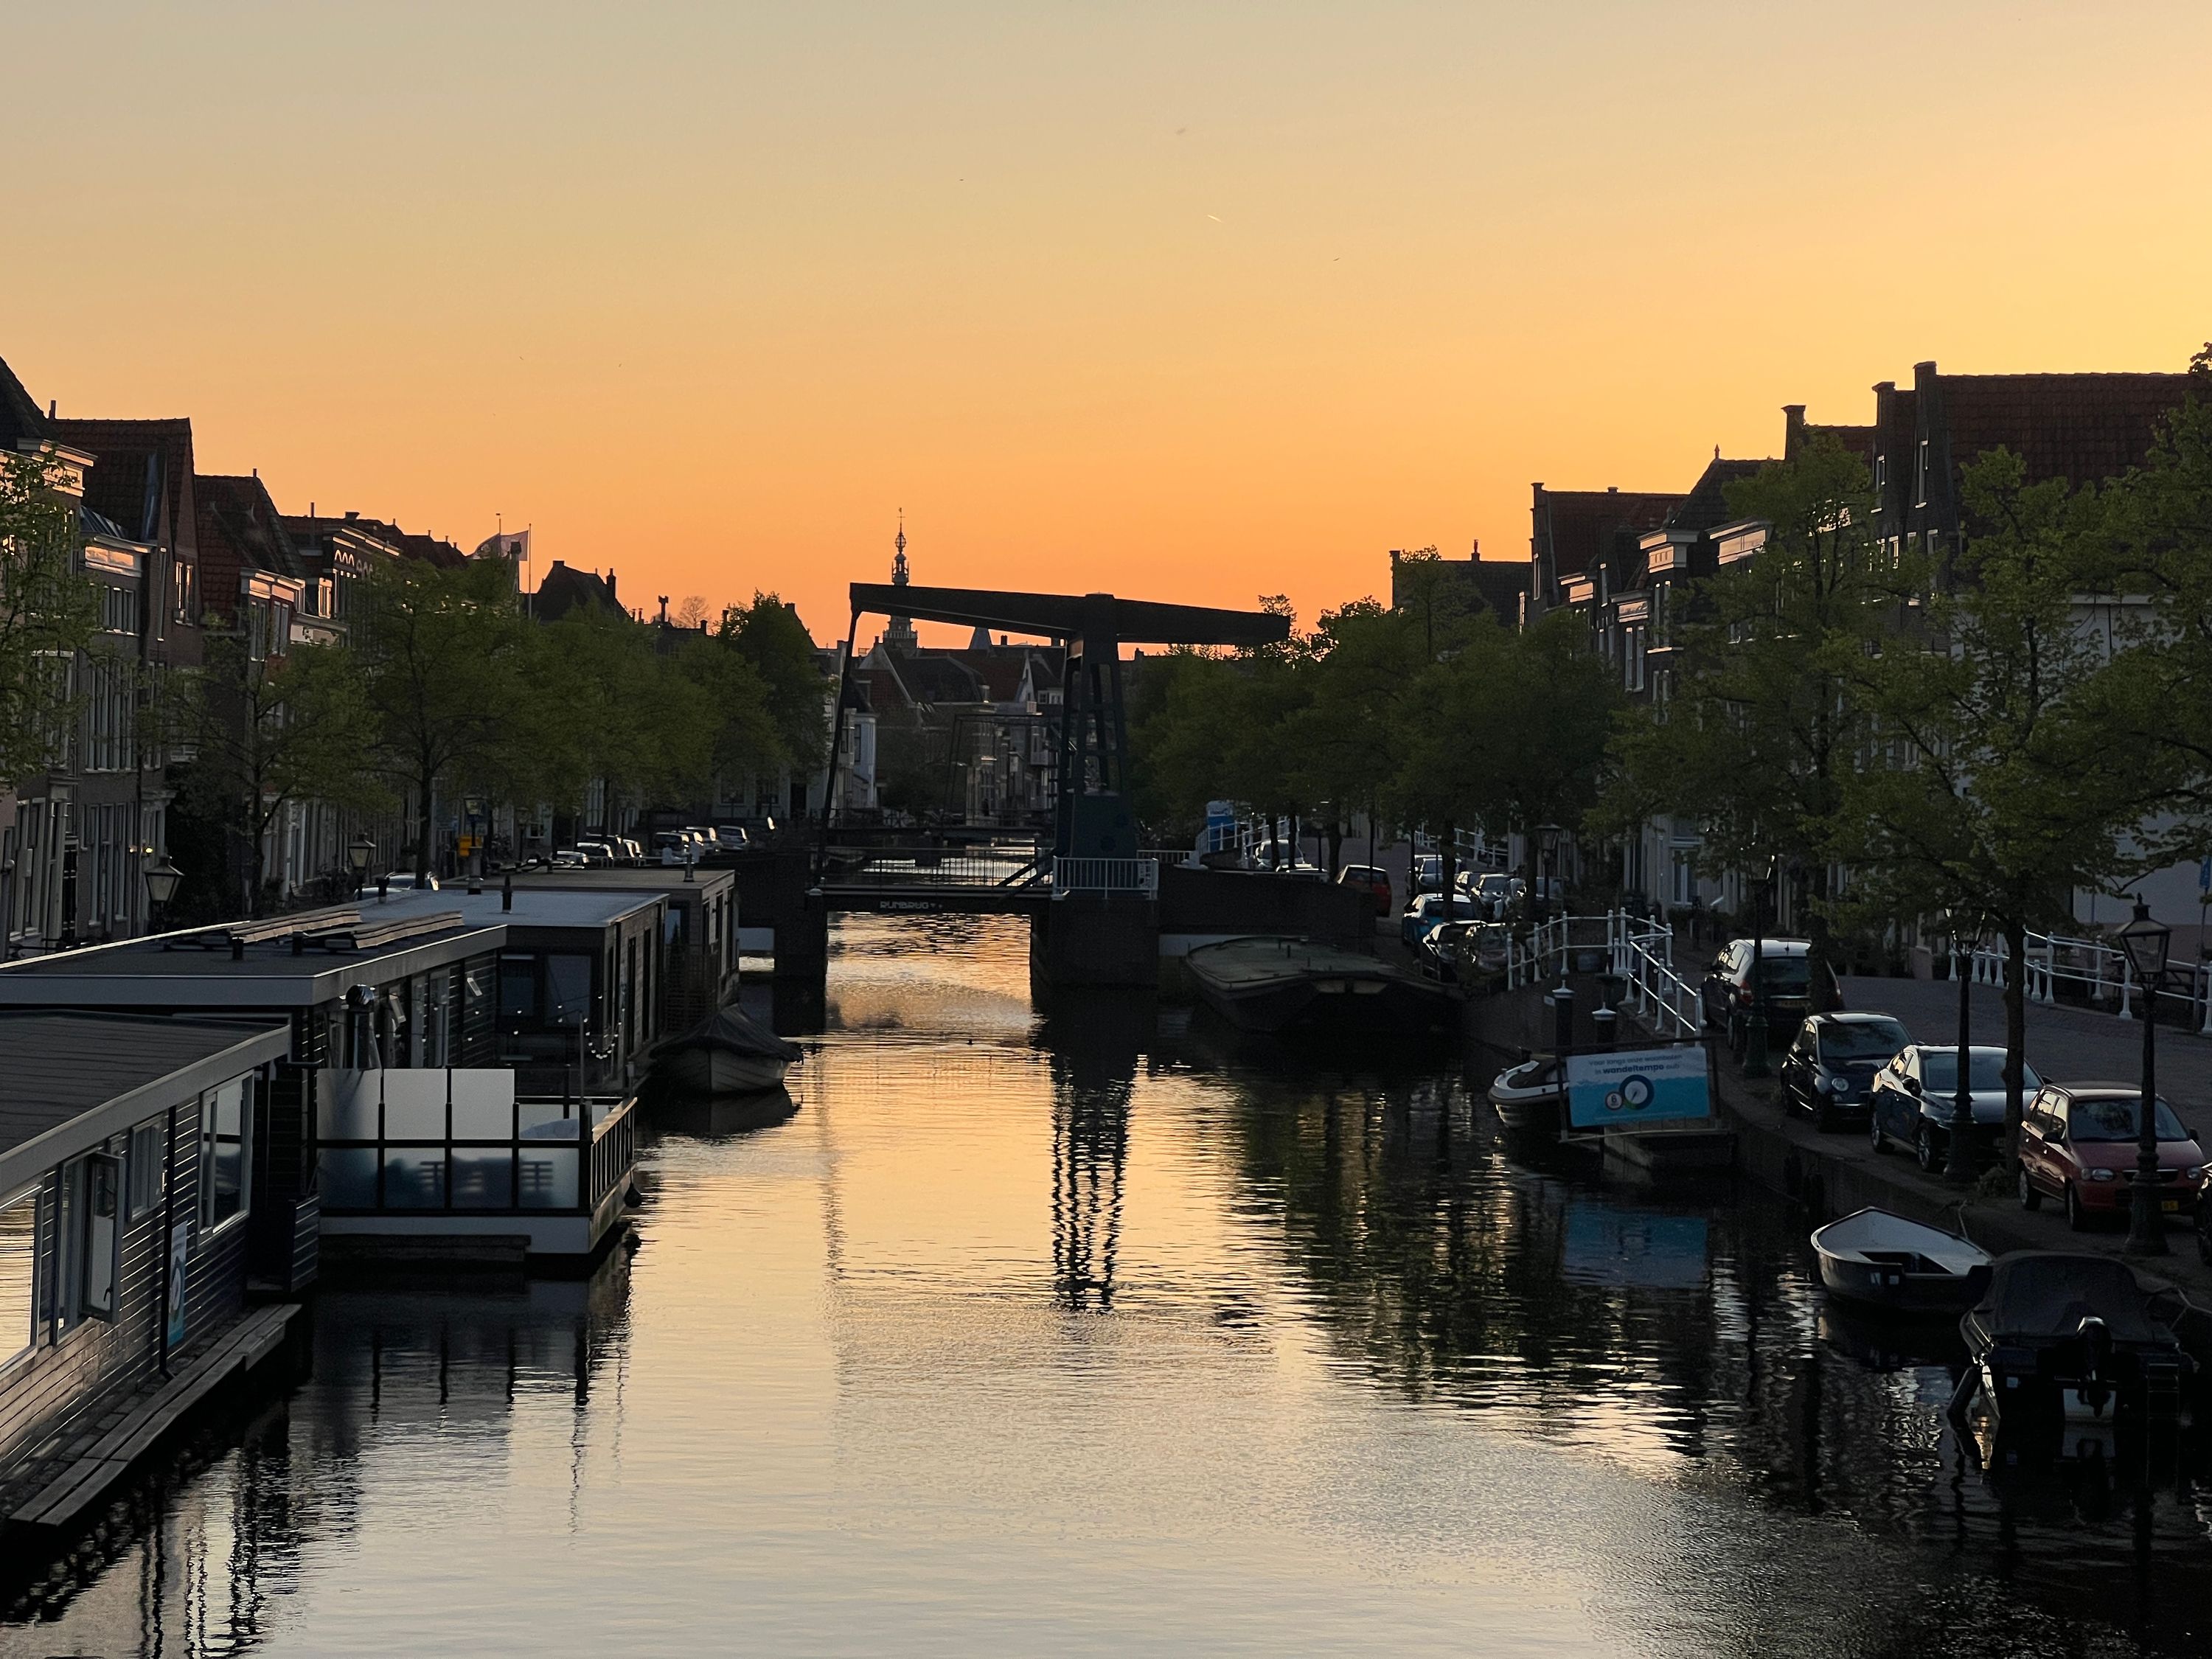 Canals in Leiden